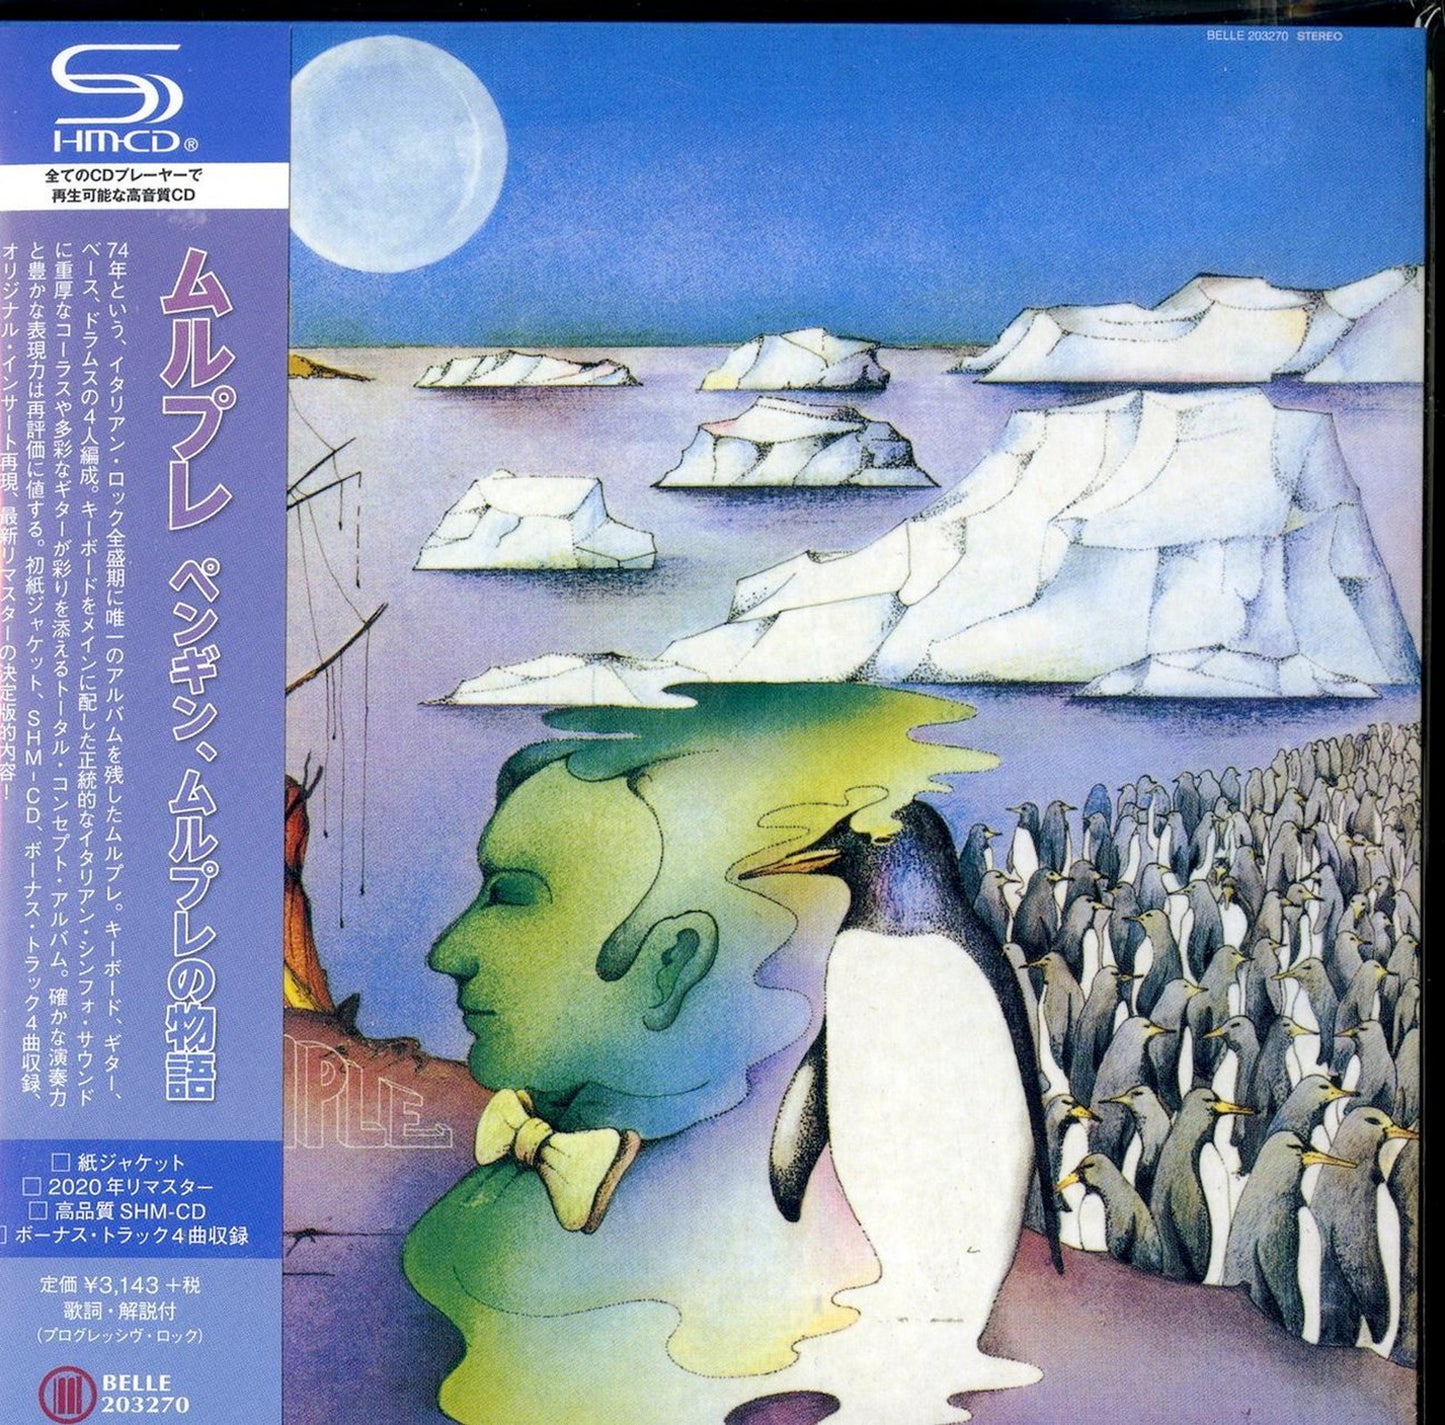 Murple - Io Sono Murple  - Japan Mini LP SHM-CD  Bonus Track